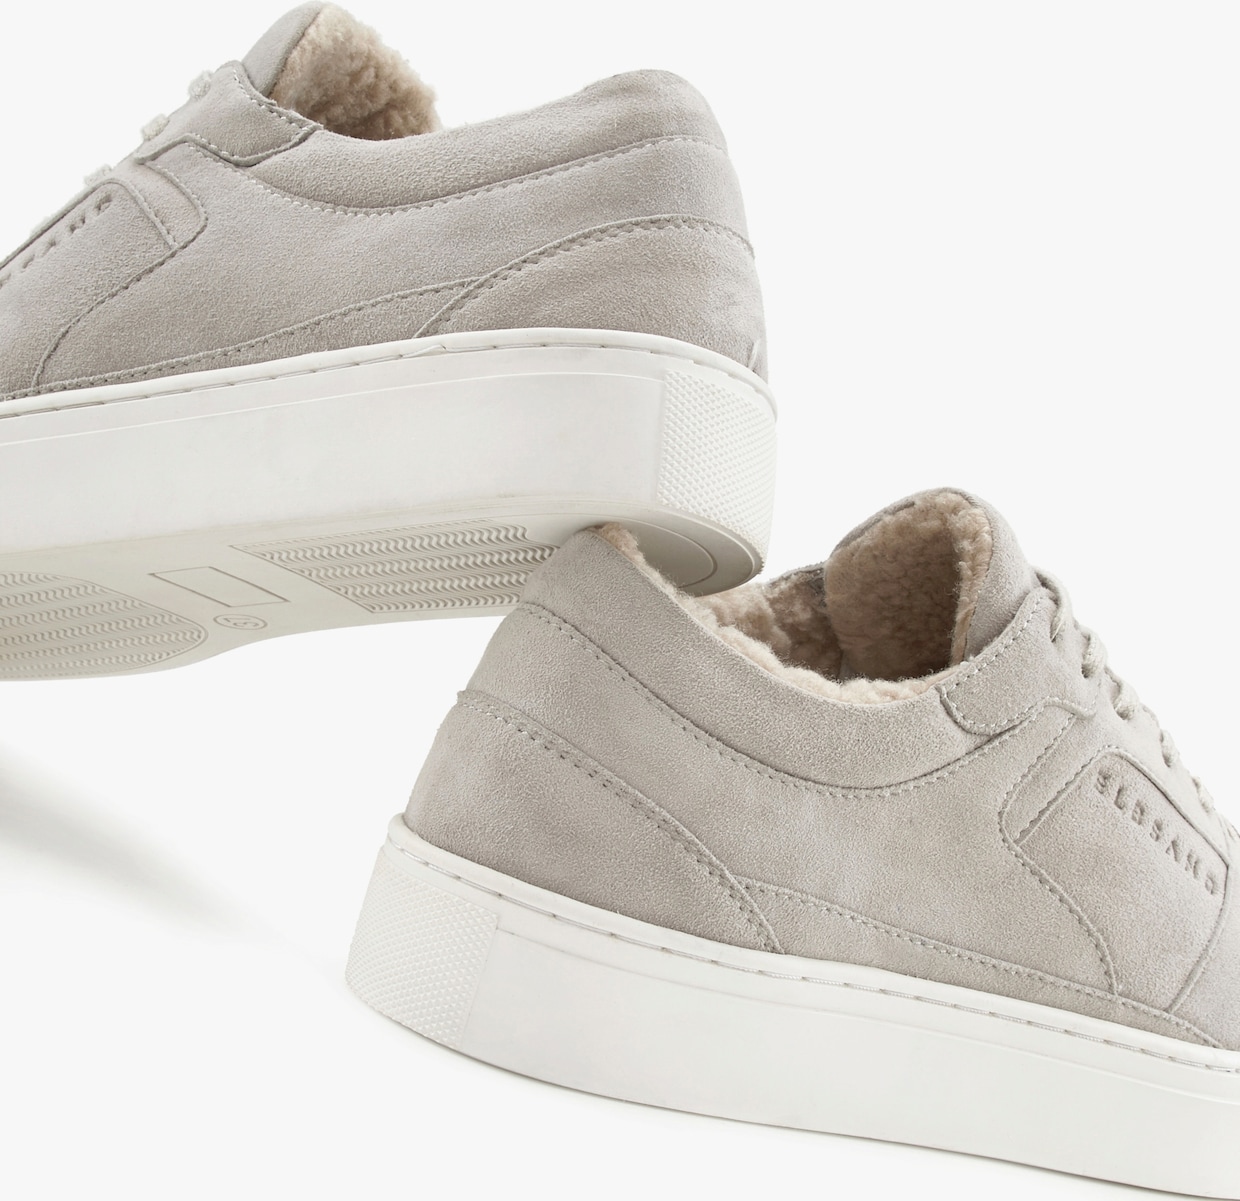 Elbsand Sneakers - gris